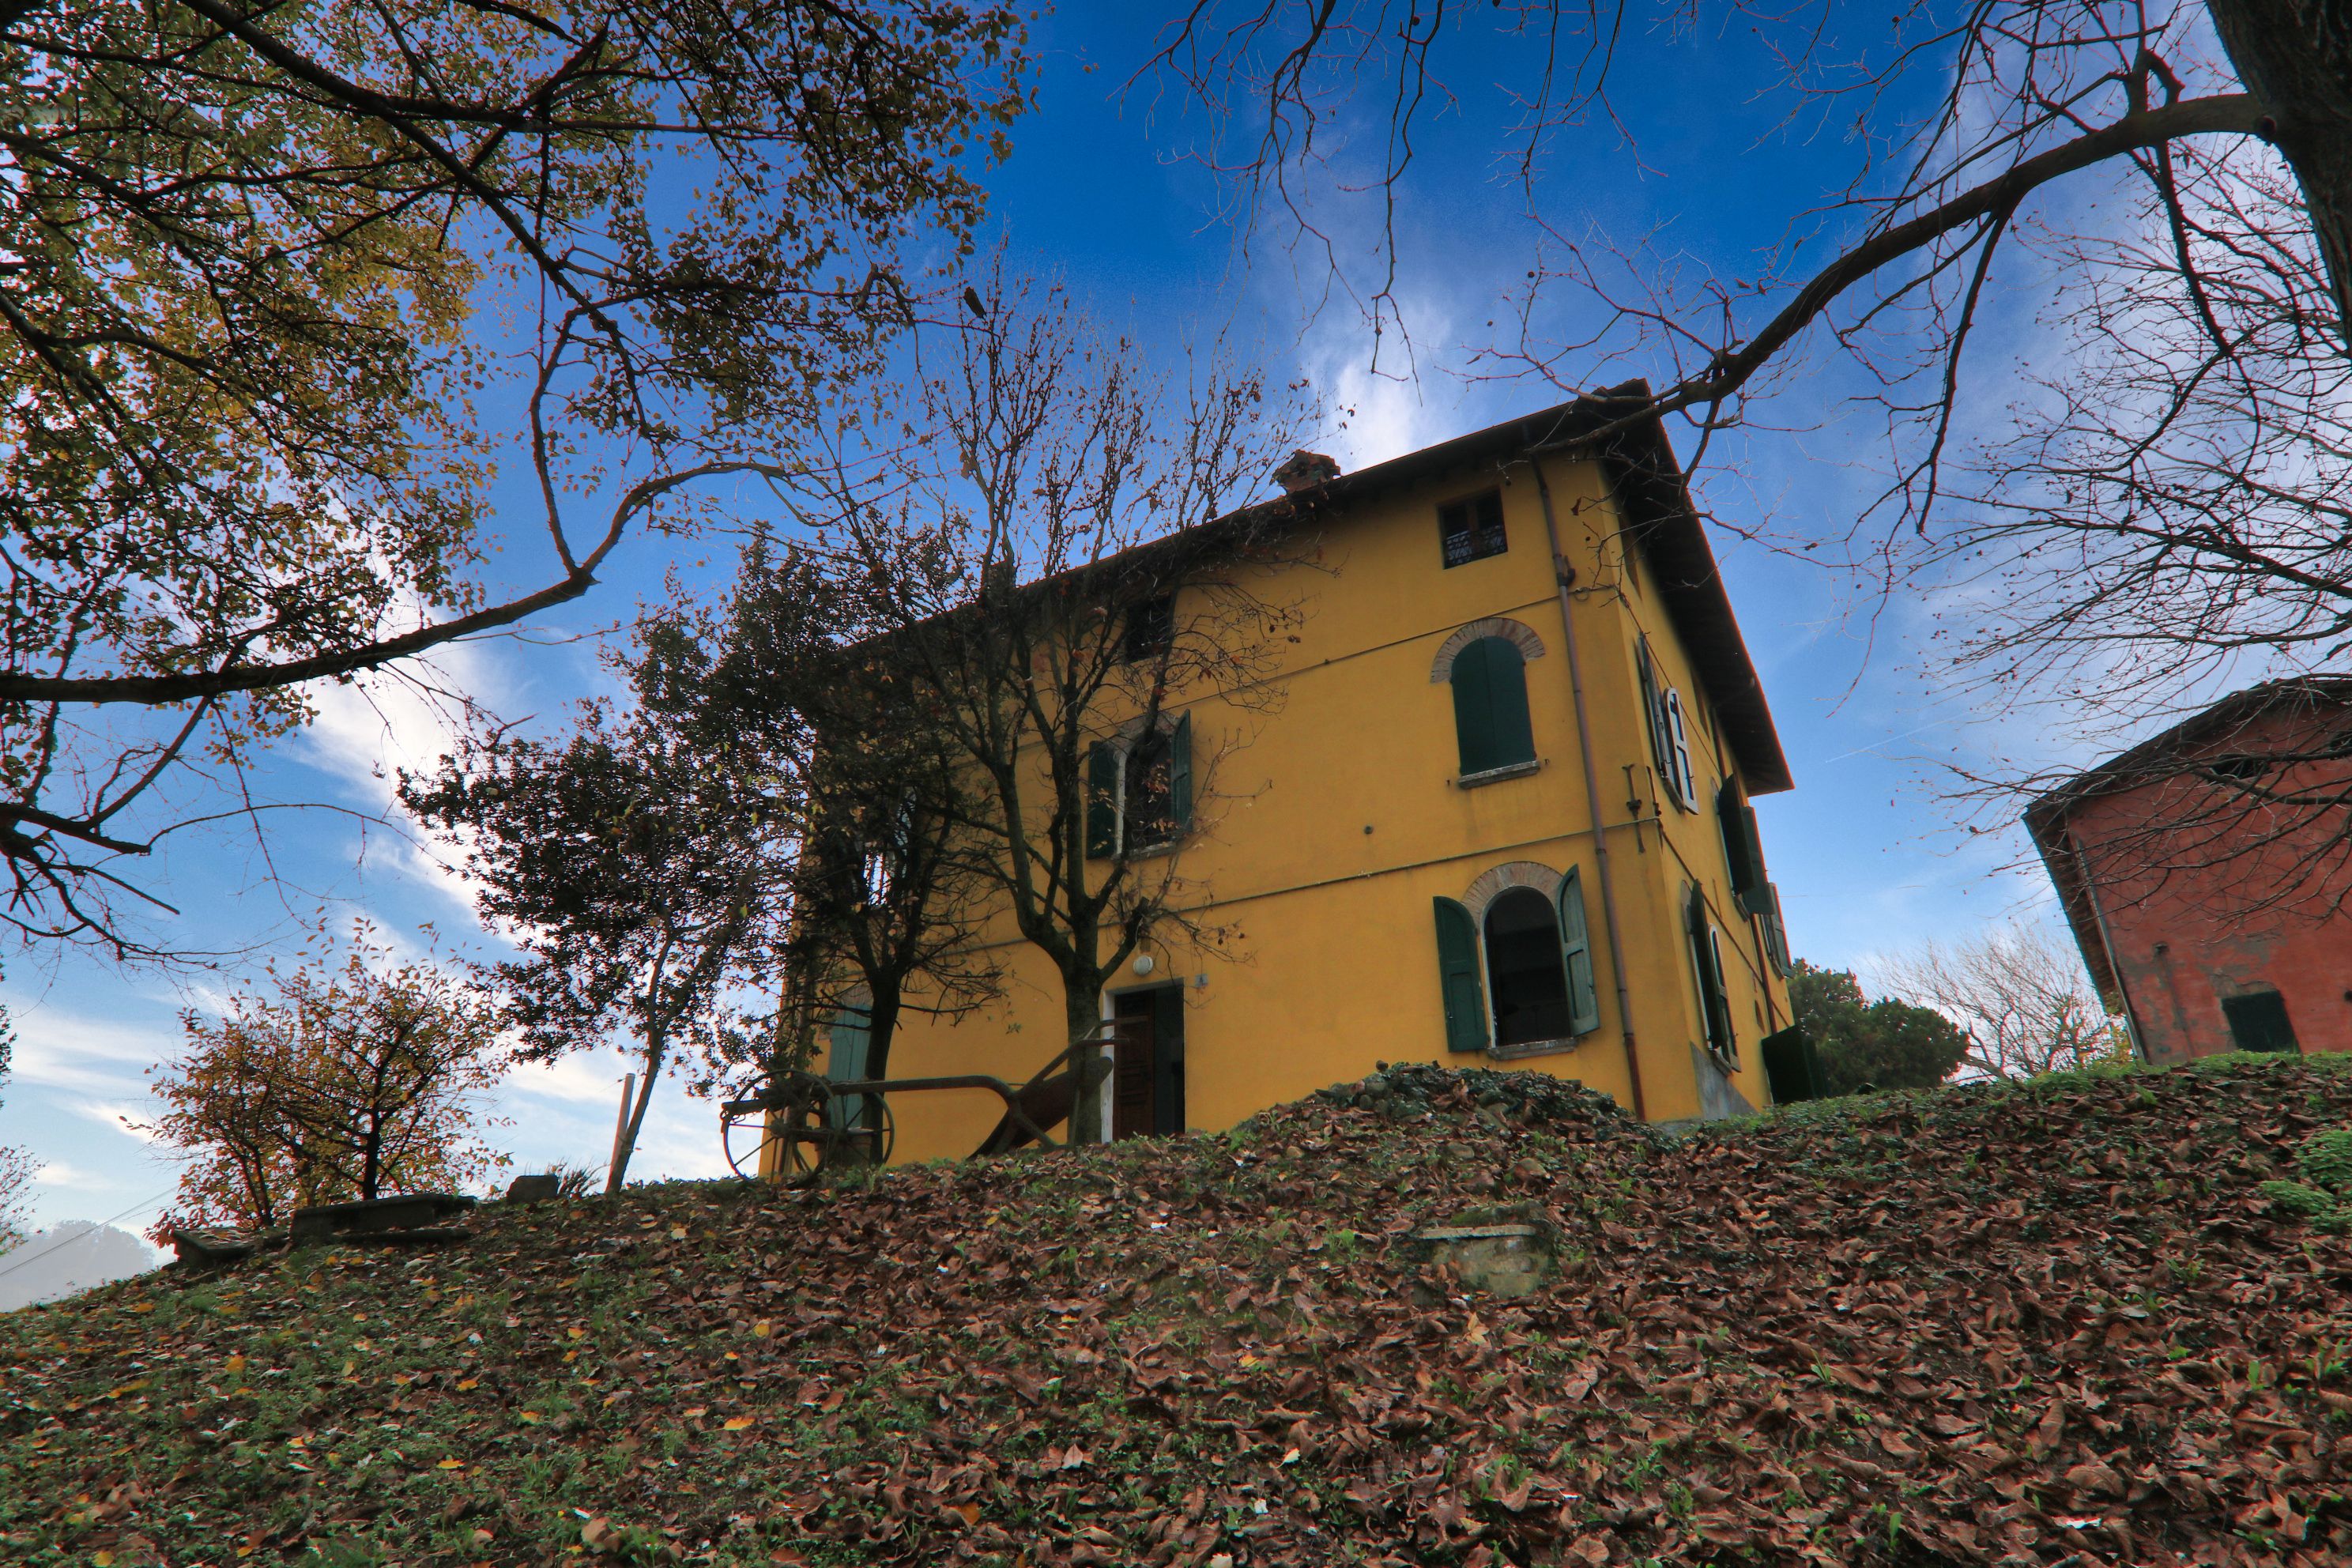 Vendita casale in zona tranquilla Castelvetro di Modena Emilia-Romagna